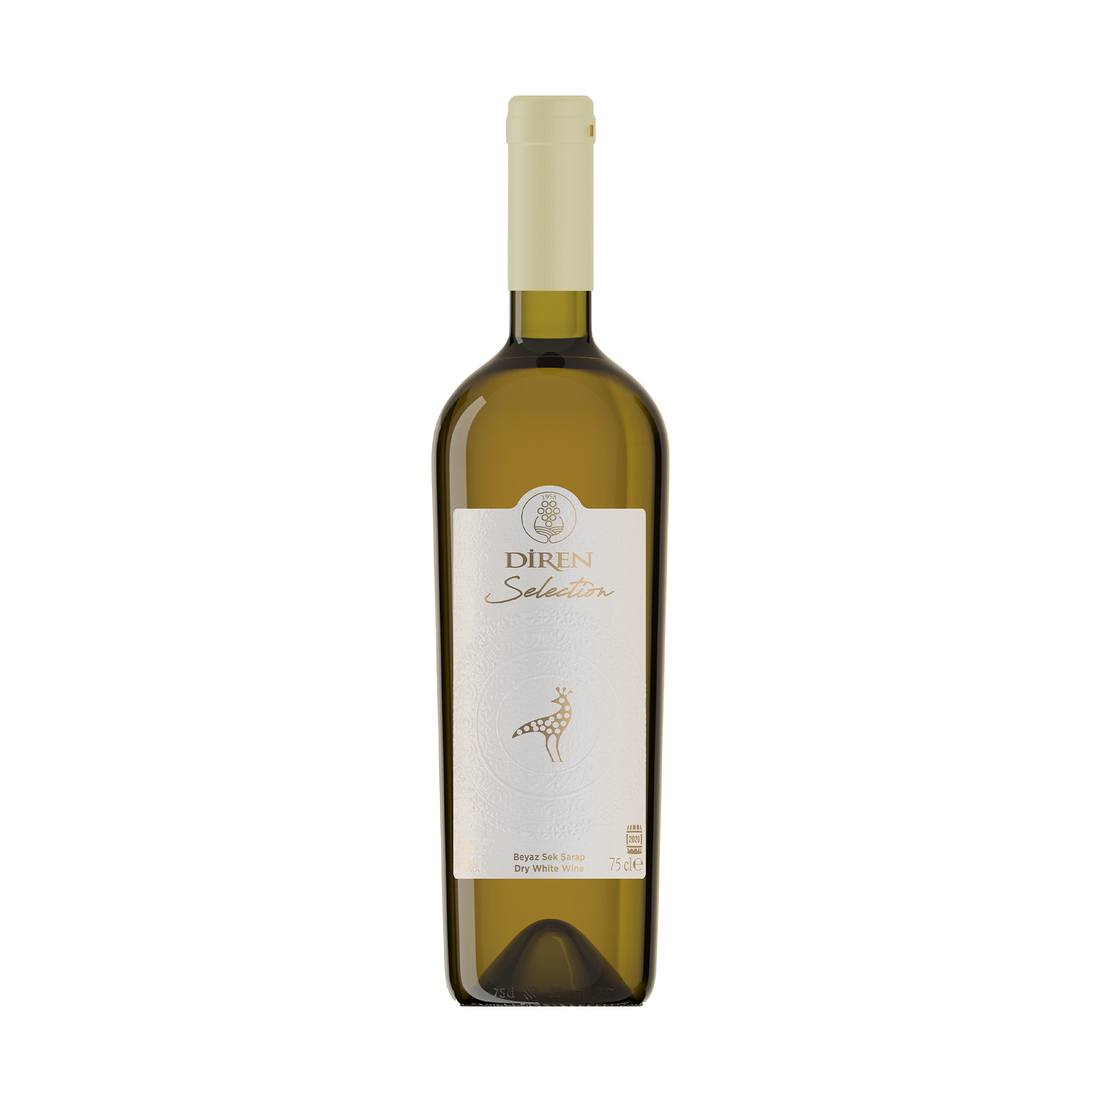 Diren Selection Beyaz Sek Şarap 750ml